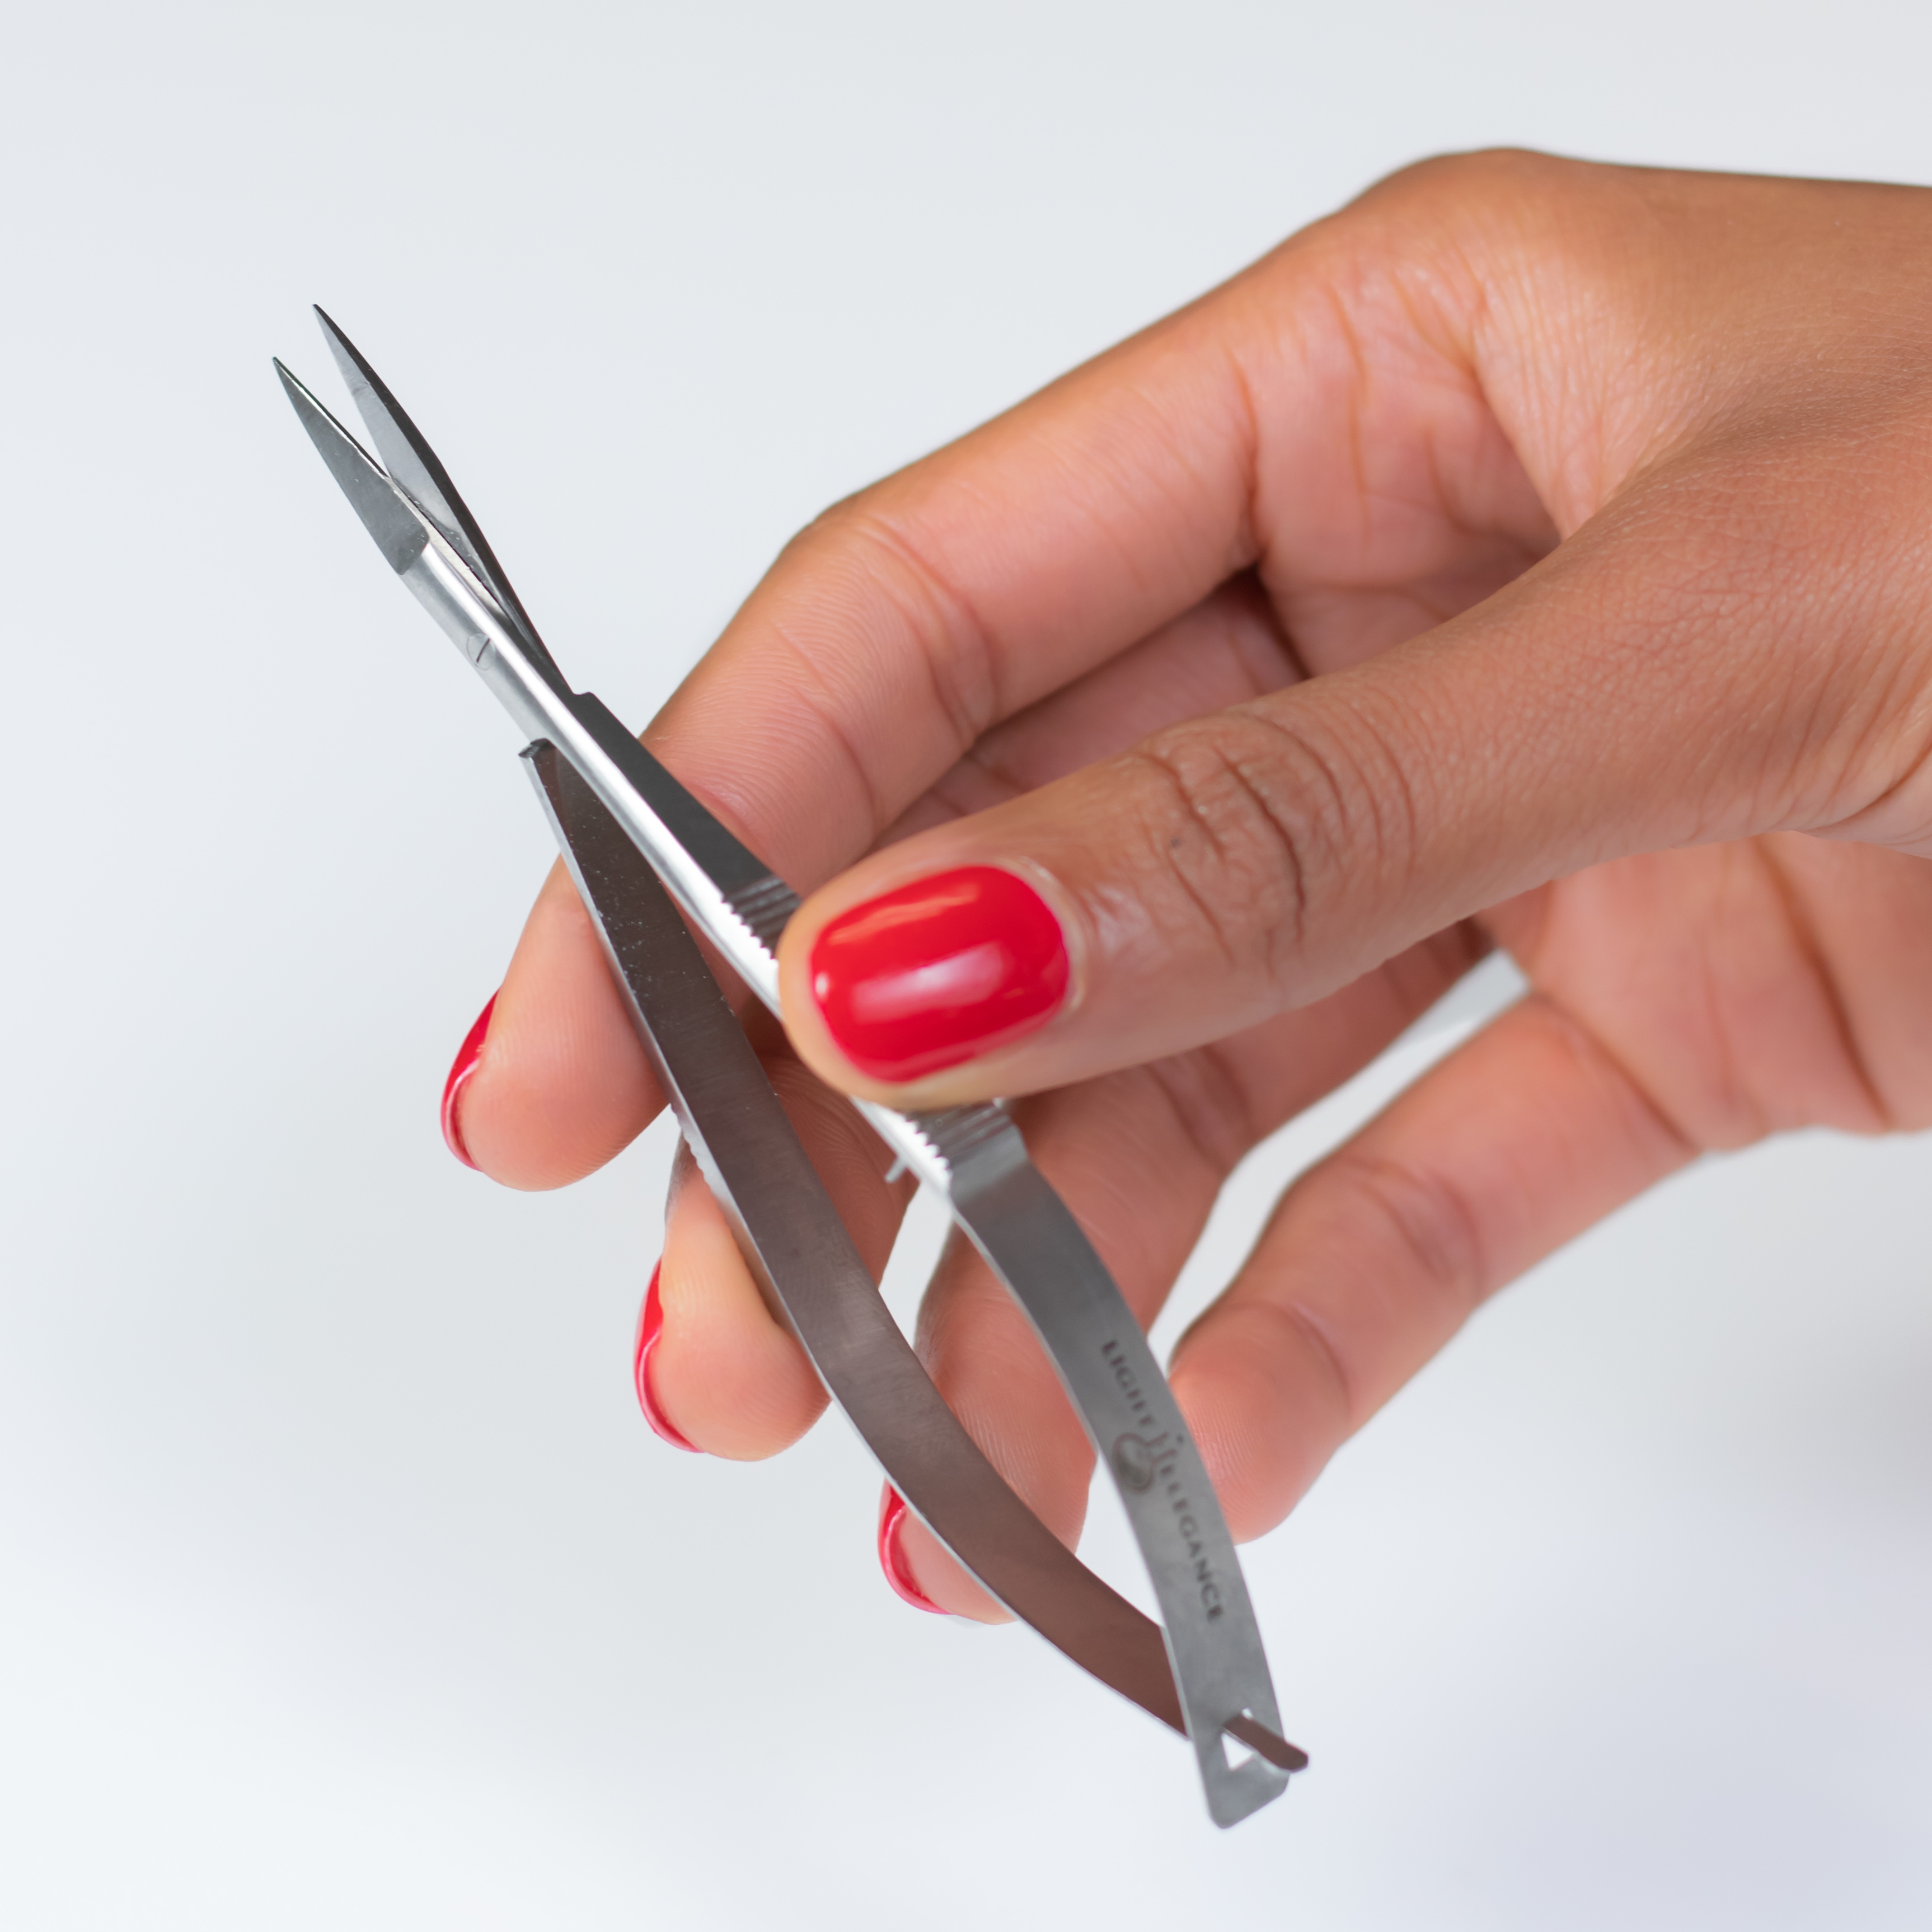 LEpro Precision Scissor - Straight Blade